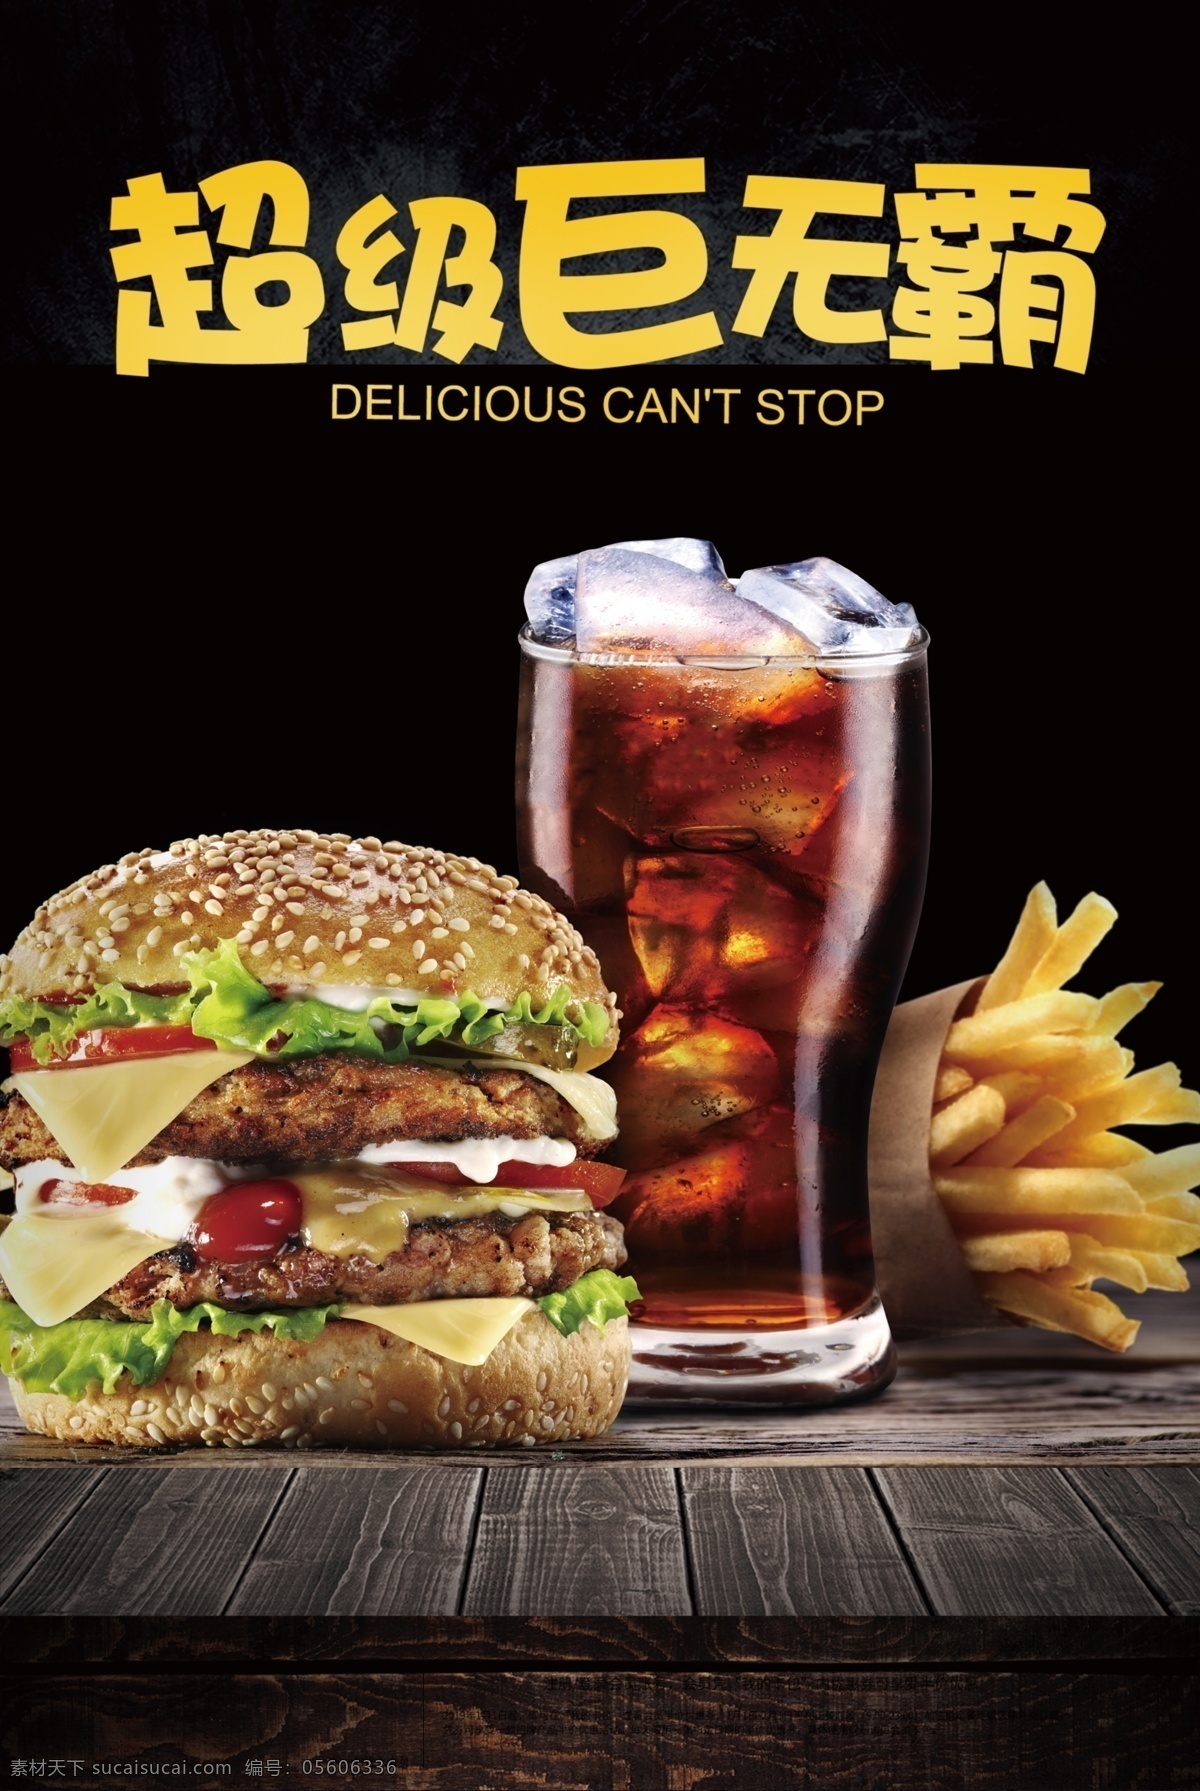 汉堡图片 美食 可乐 汉堡 薯条 鸡翅 肯德基 鸡块 油炸 木板 立体 海报 美食海报 广告